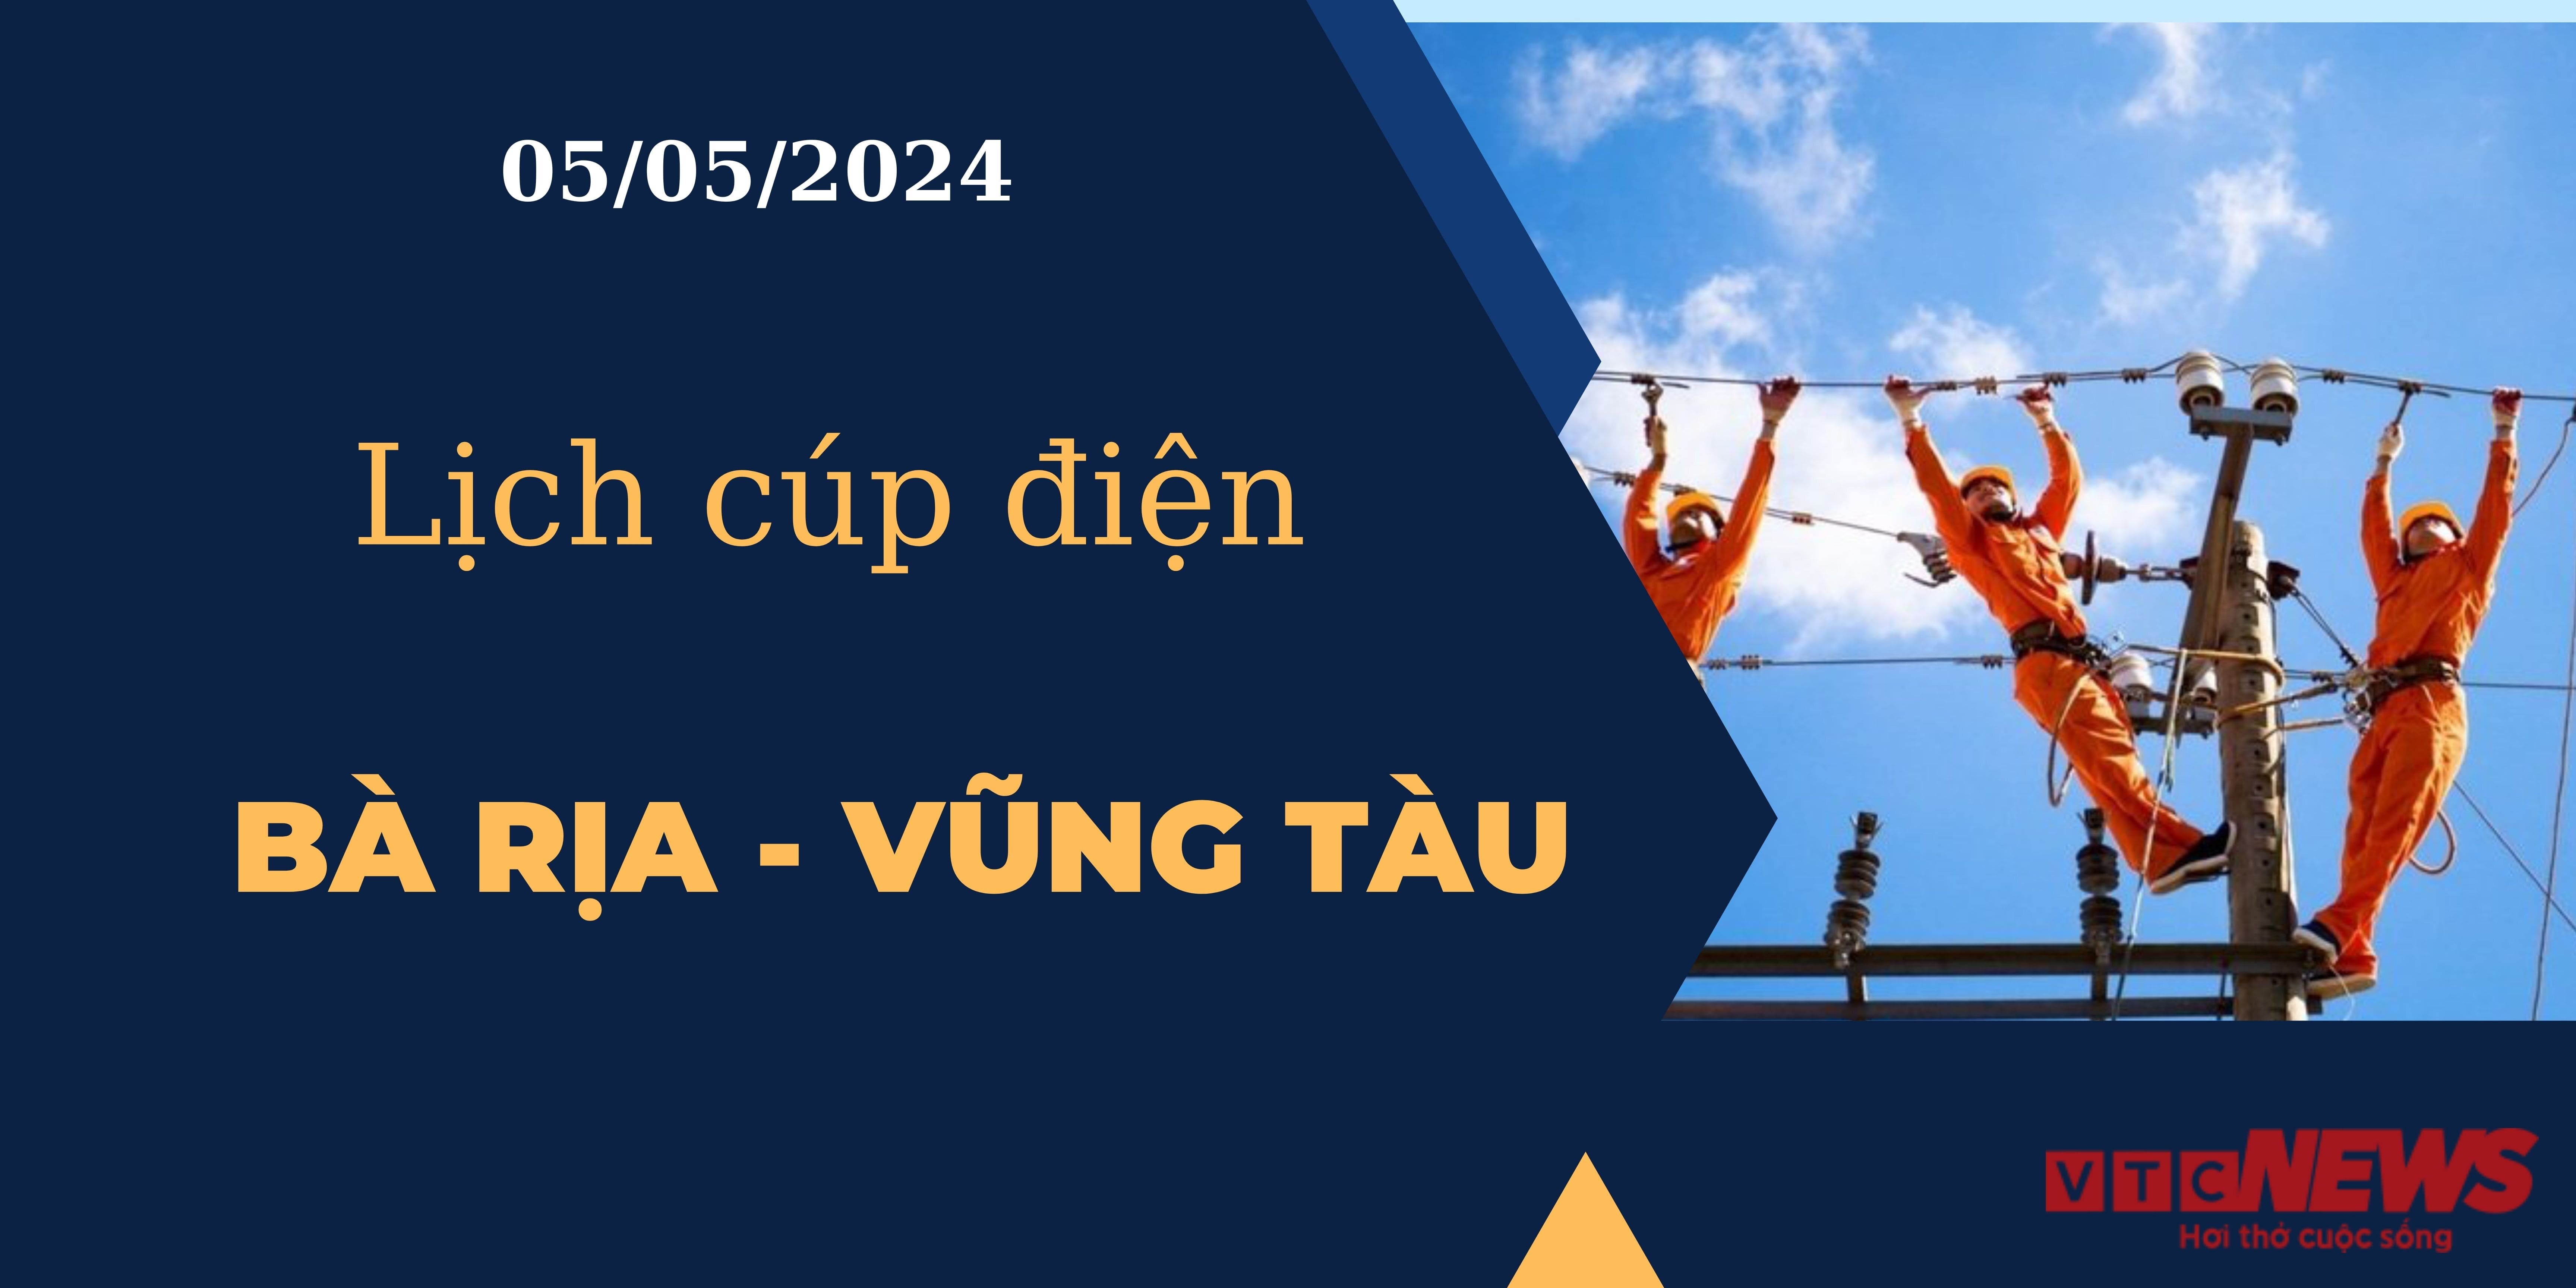 Lịch cúp điện hôm nay tại Bà Rịa - Vũng Tàu ngày 05/05/2024